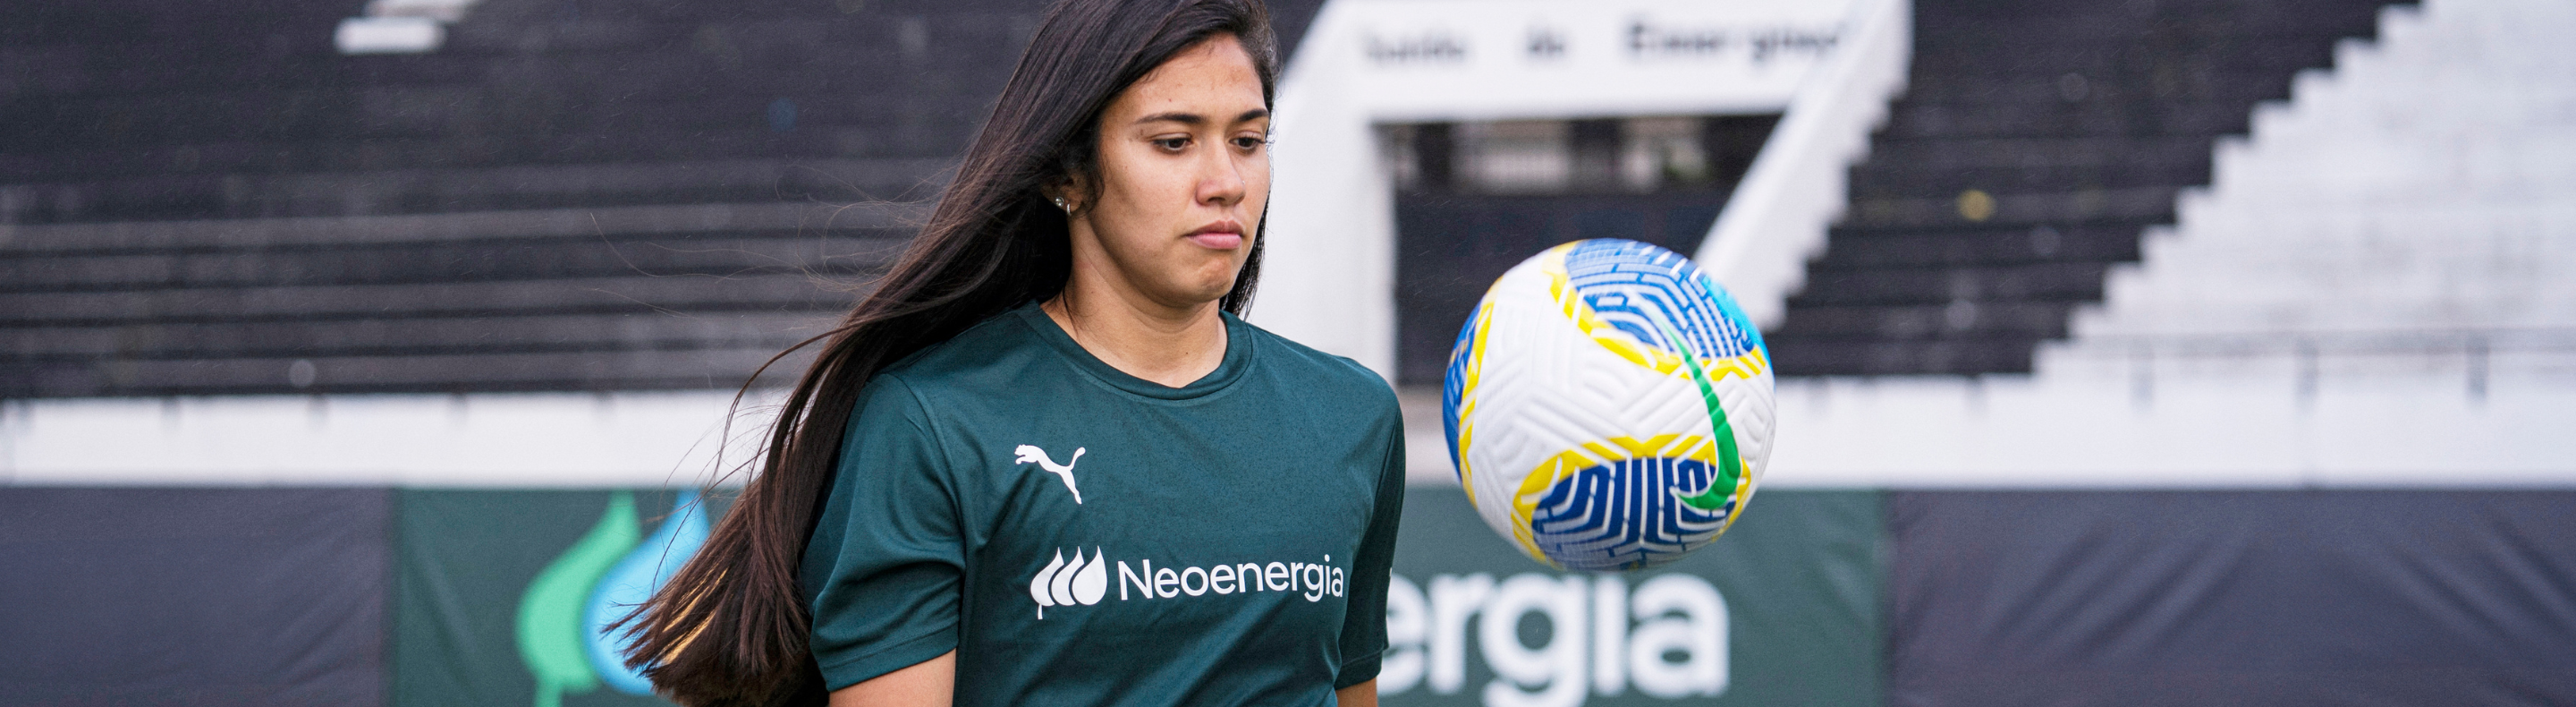 Antonia Silva, da Seleção Brasileira Feminina de Futebol, chega ao Time Neoenergia